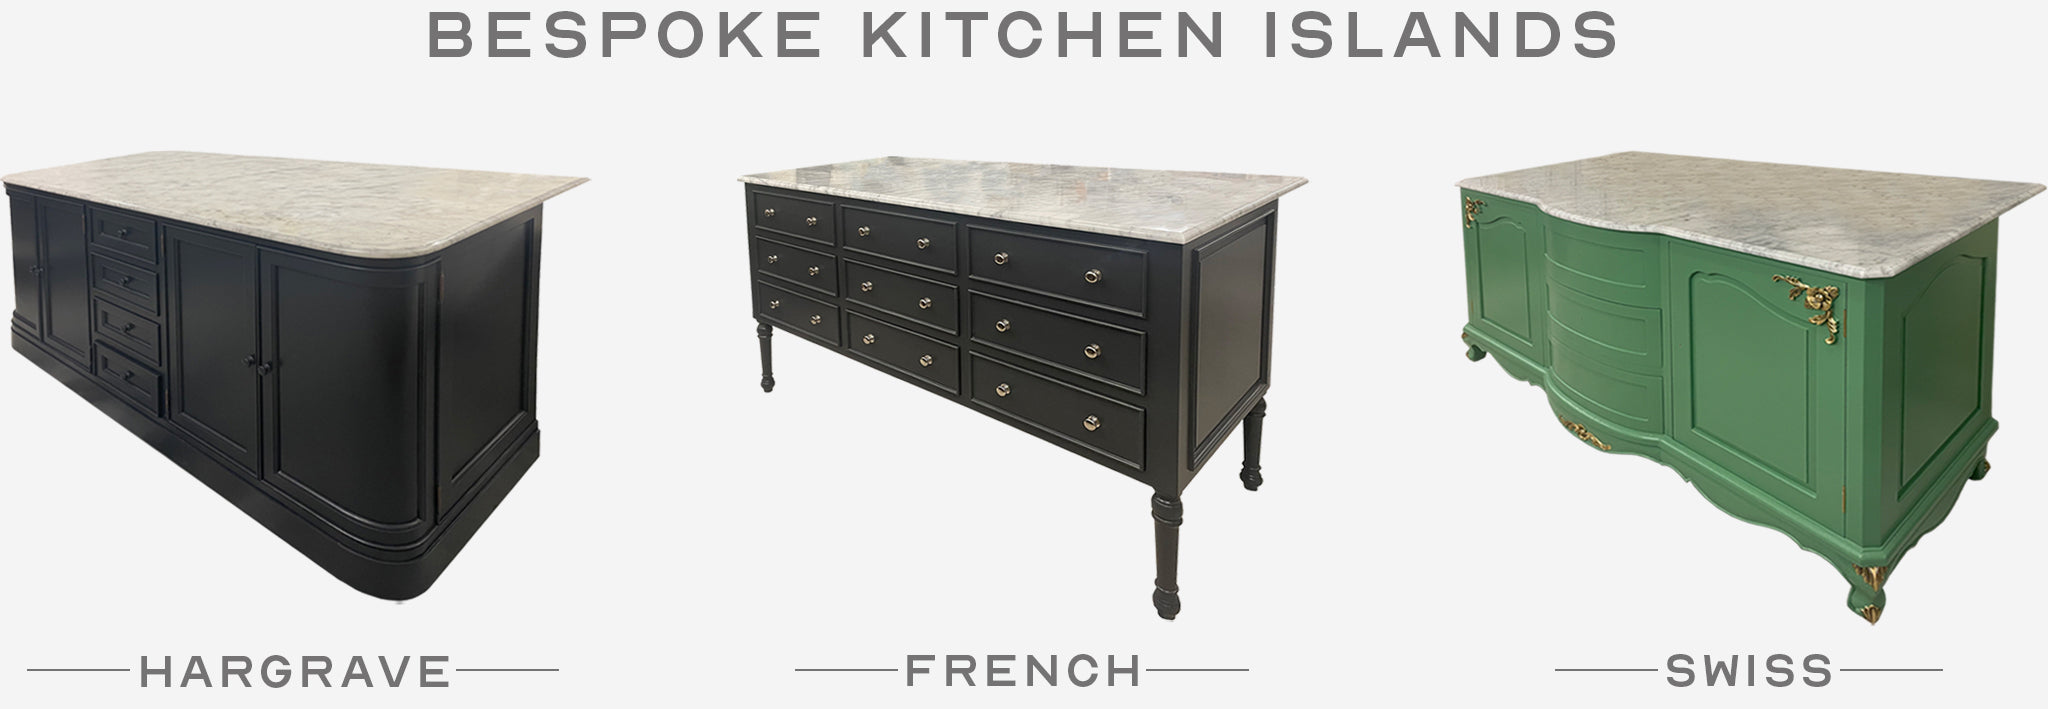 Bespoke Kitchen Furniture Kitchen Islands